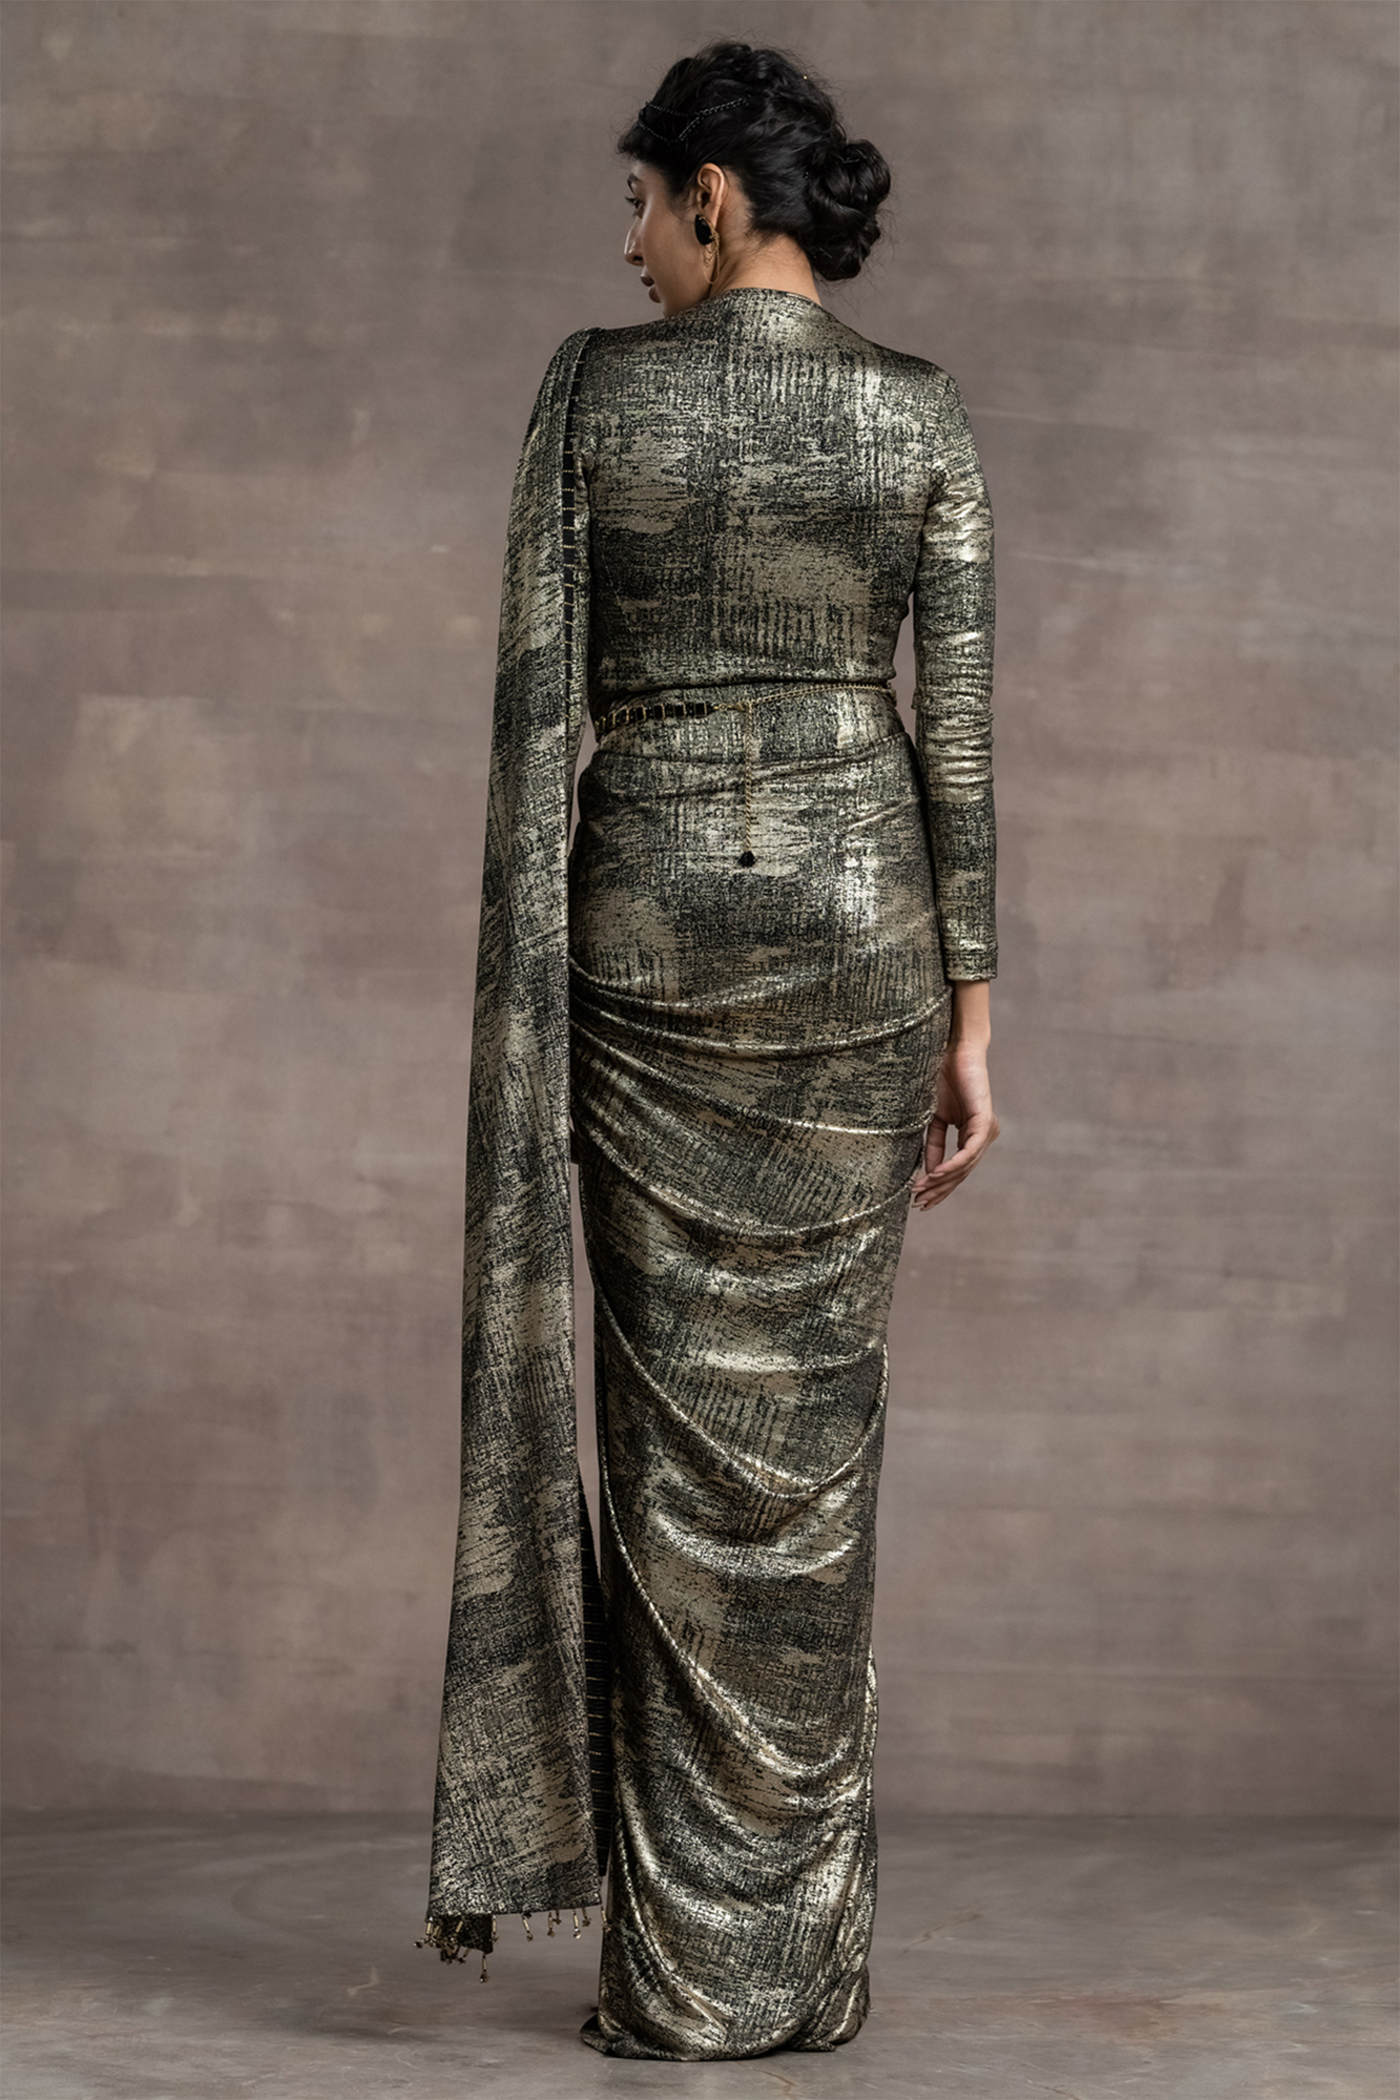 Tarun tahiliani Concept Saree With Matching Blouse metallic black indian designer wear bridal wedding online shopping melange singapore